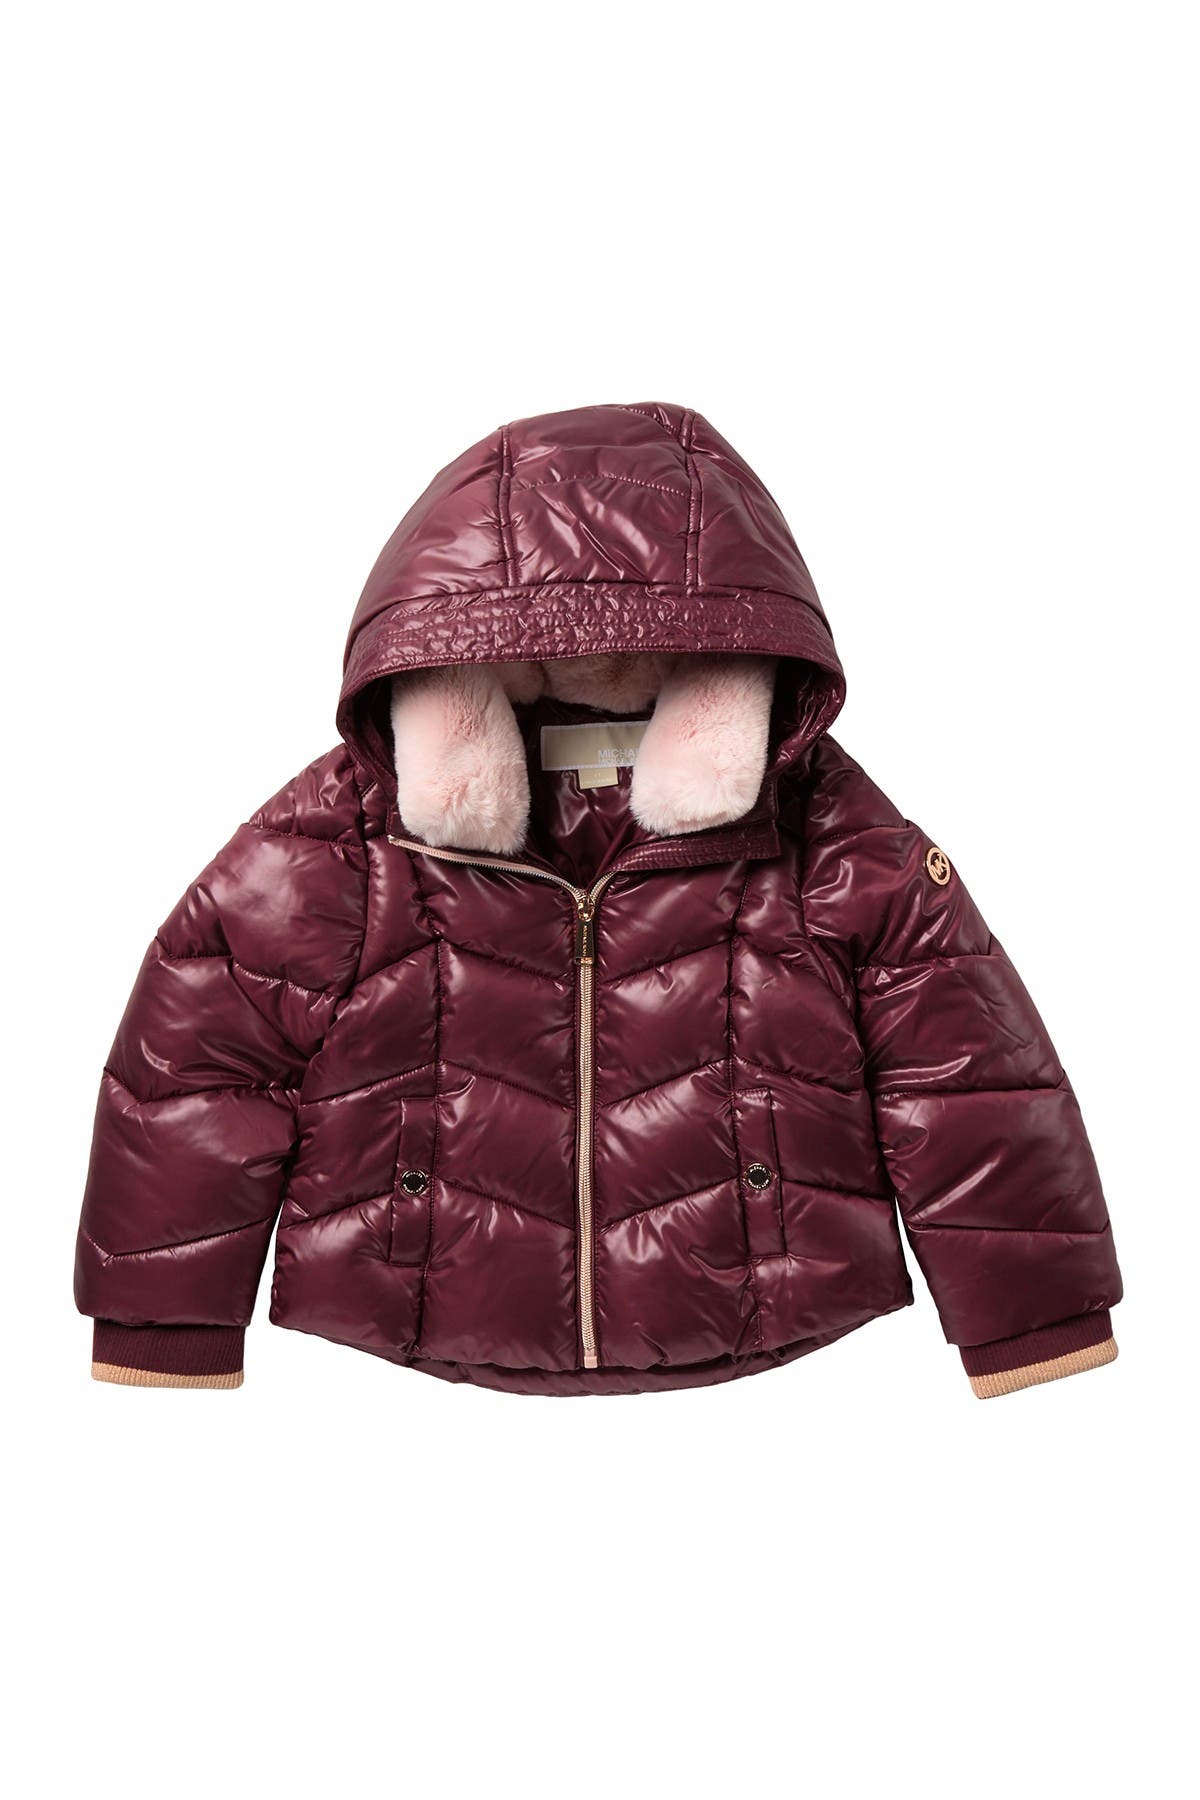 toddler michael kors jacket